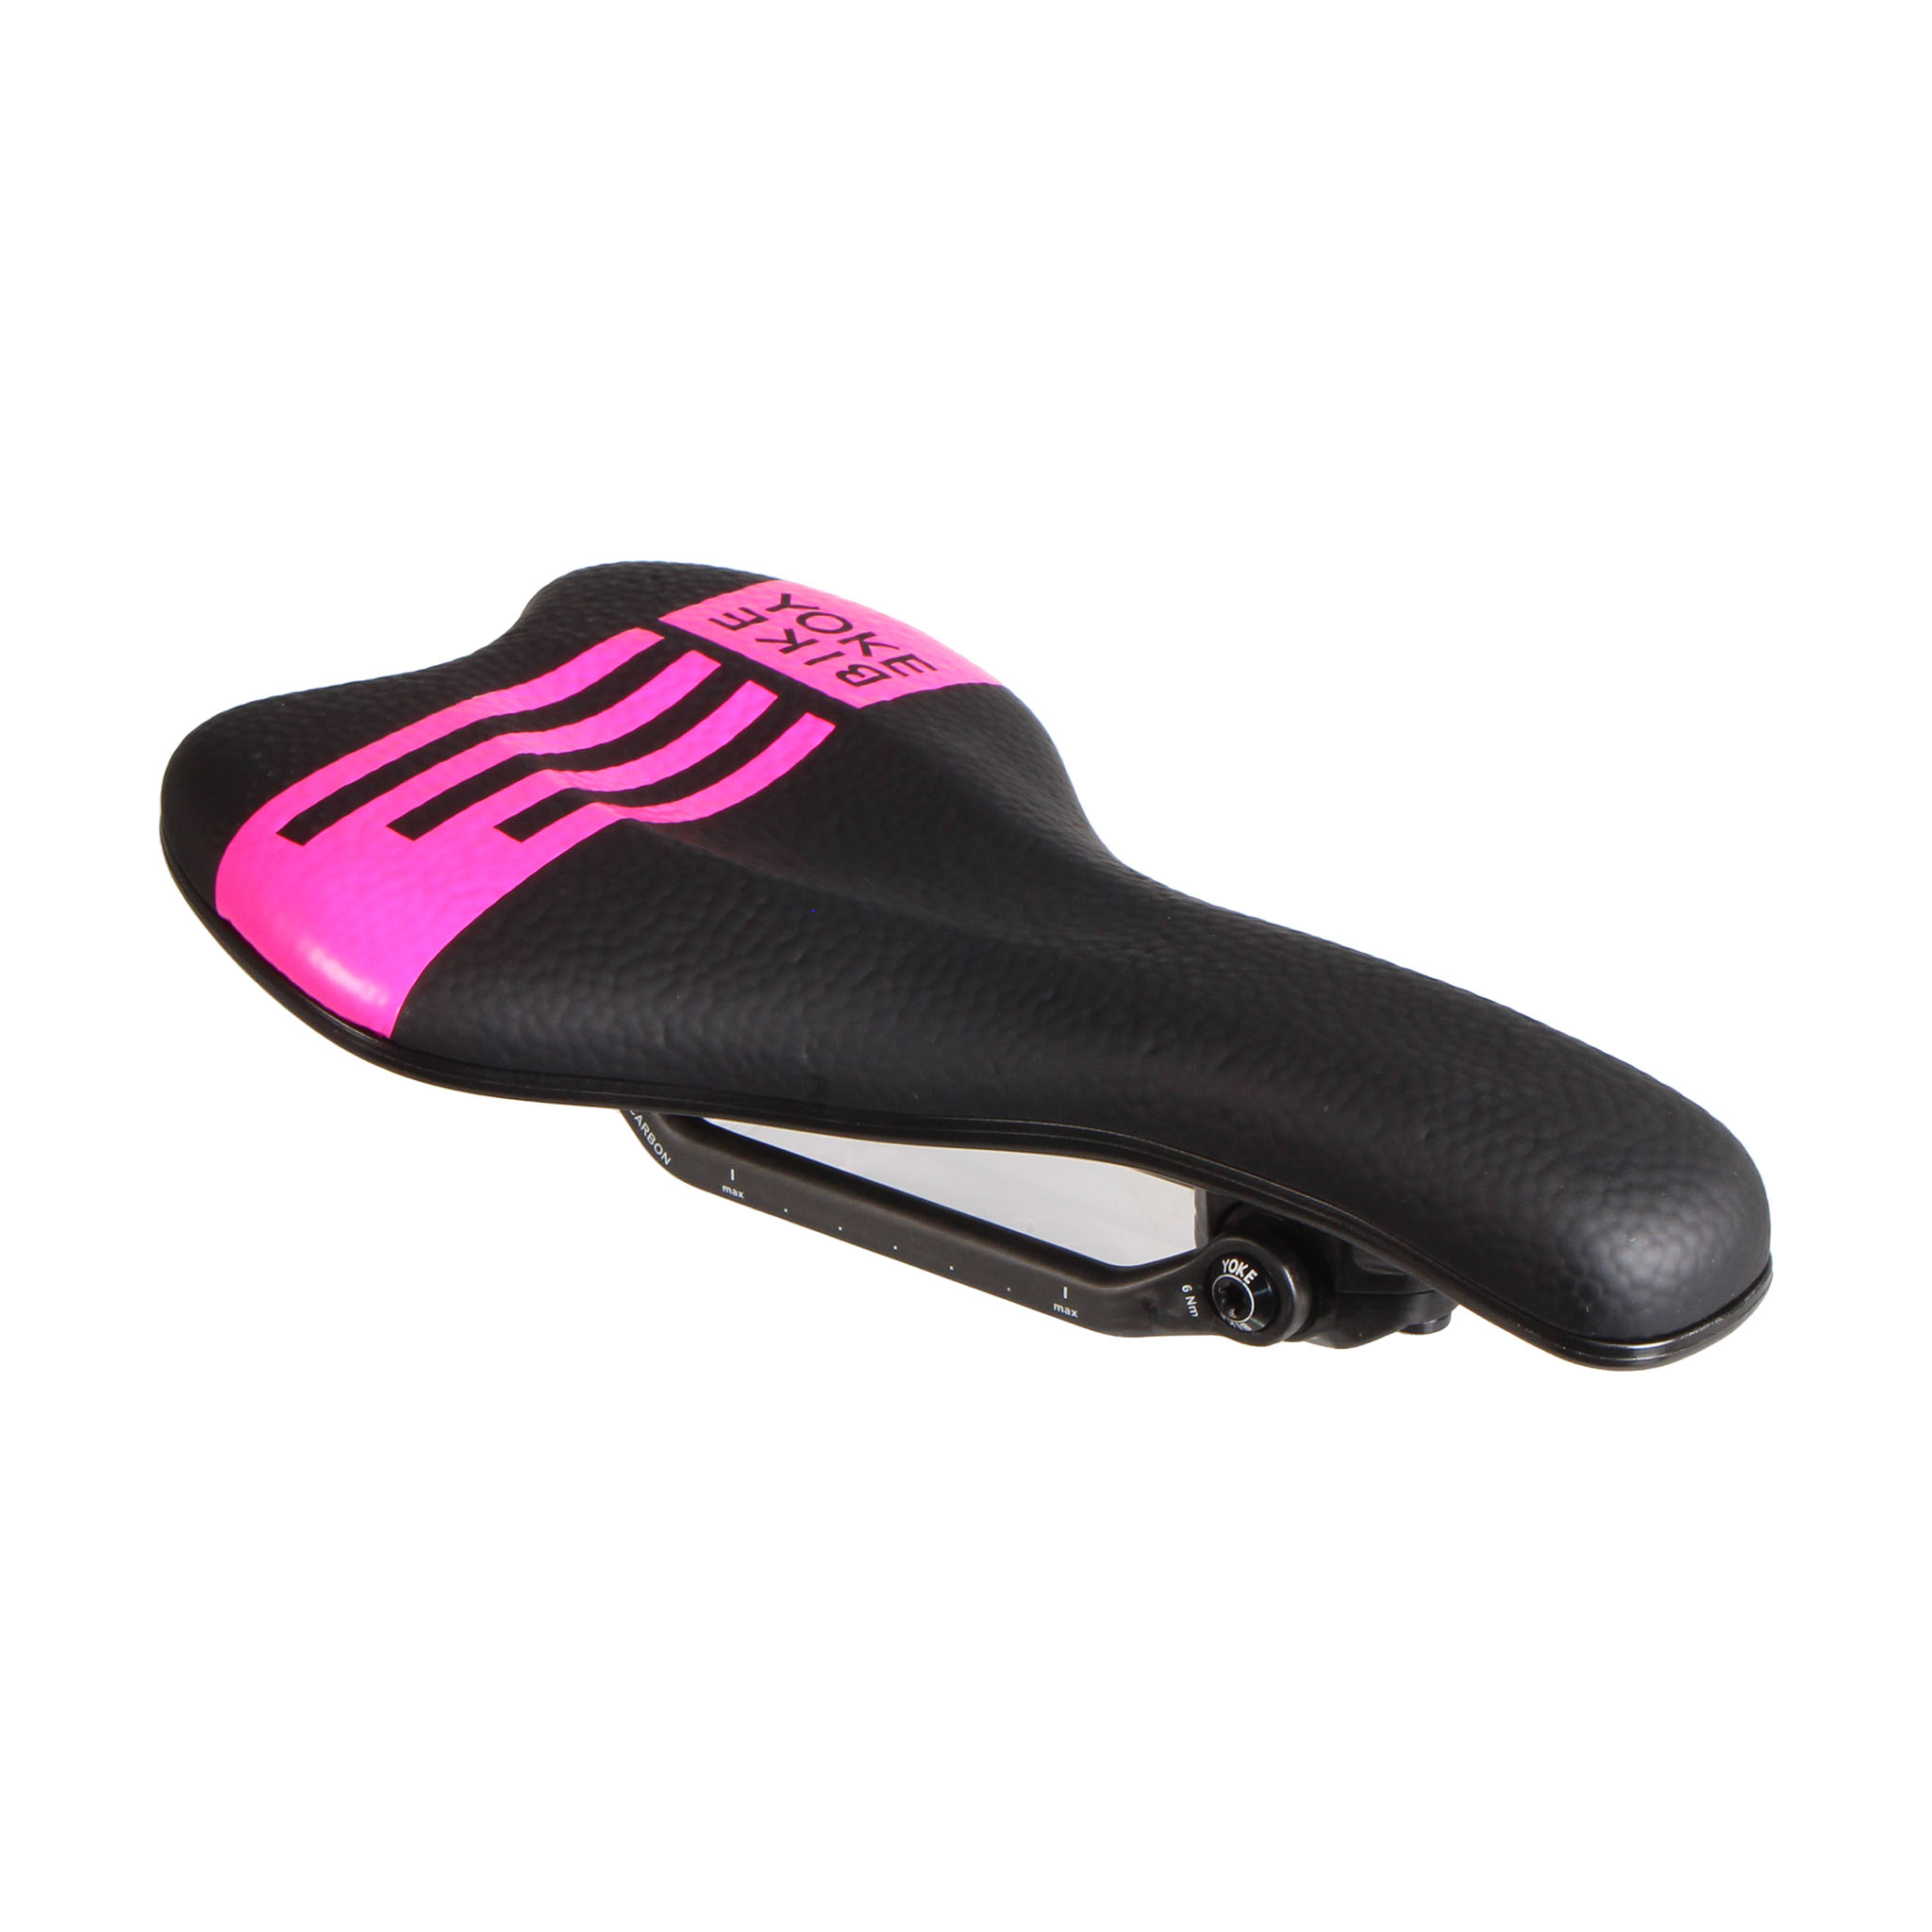 Bike Yoke Sagma Carbon Saddle, 142 - Black/Pink